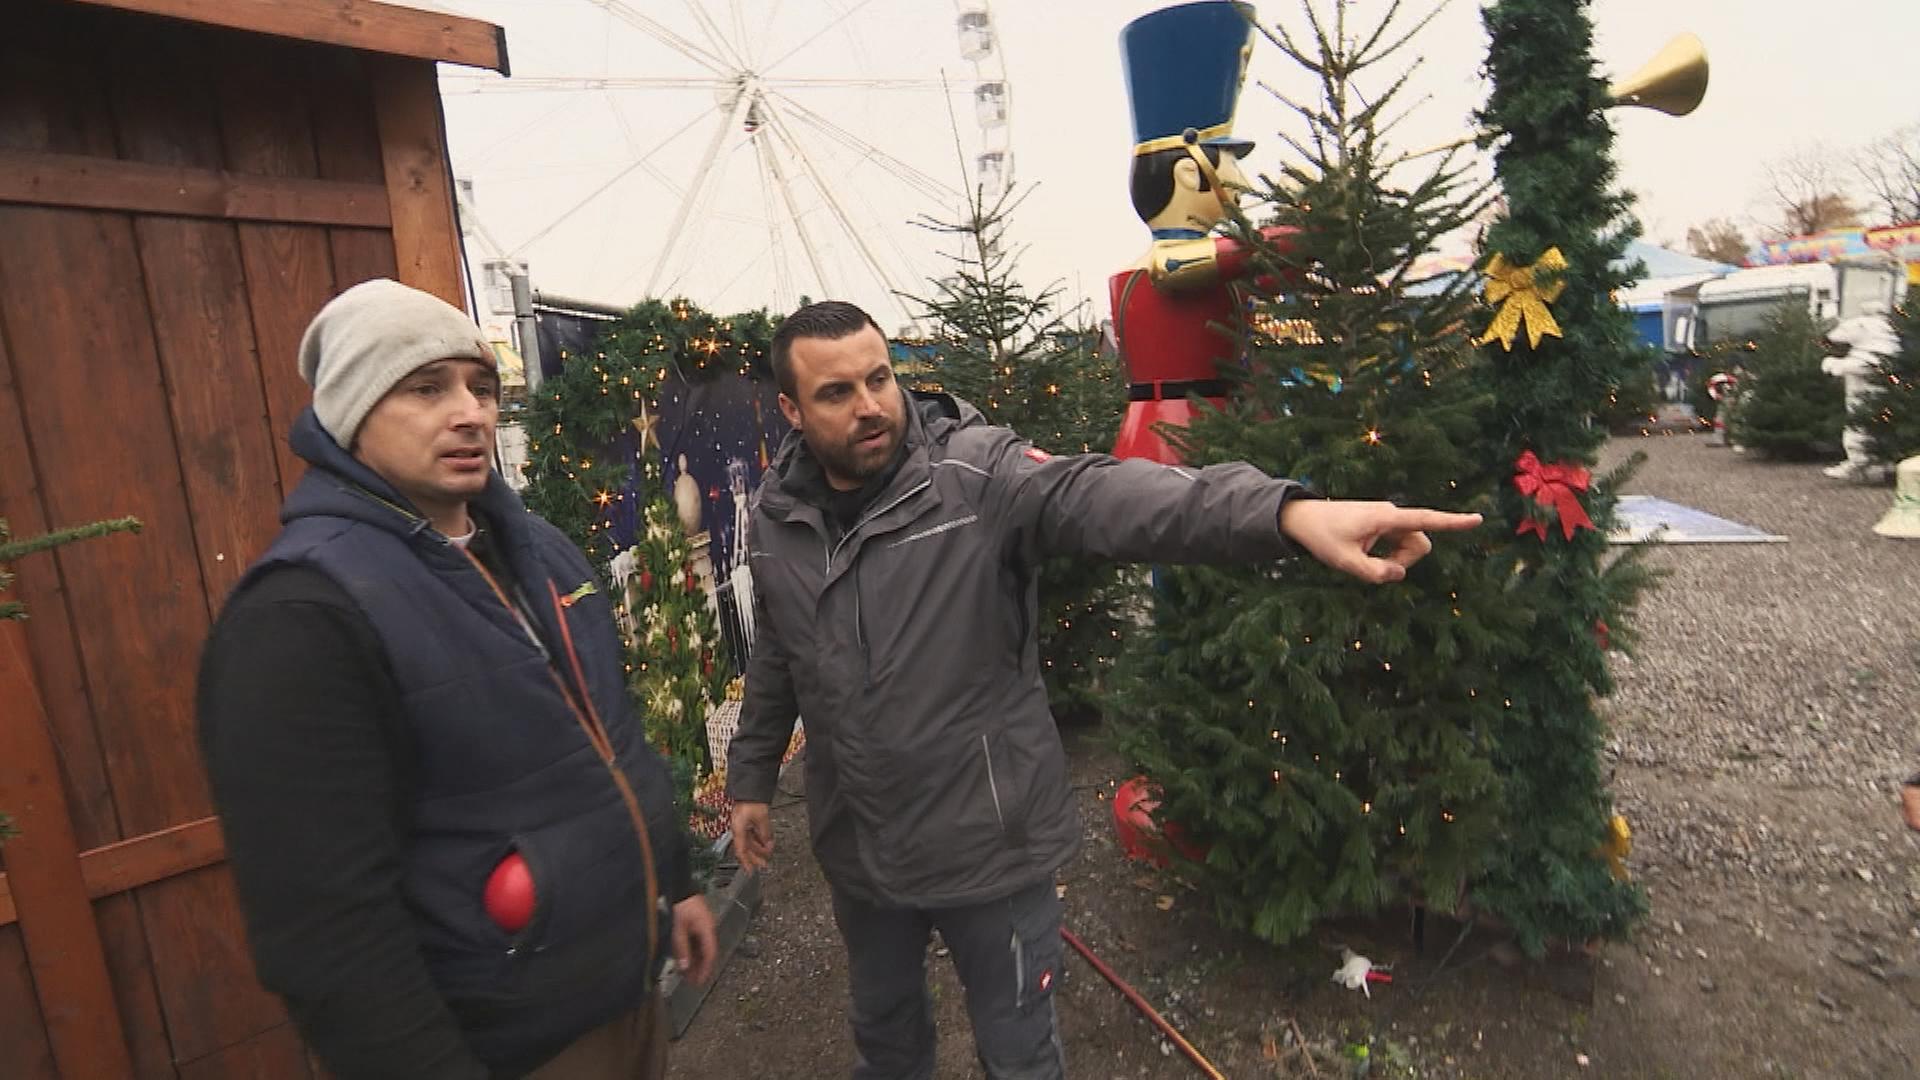 Platzmeister Sebastian Küchenmeister redet auf dem Weihnachtsmarkt mit einem Mann